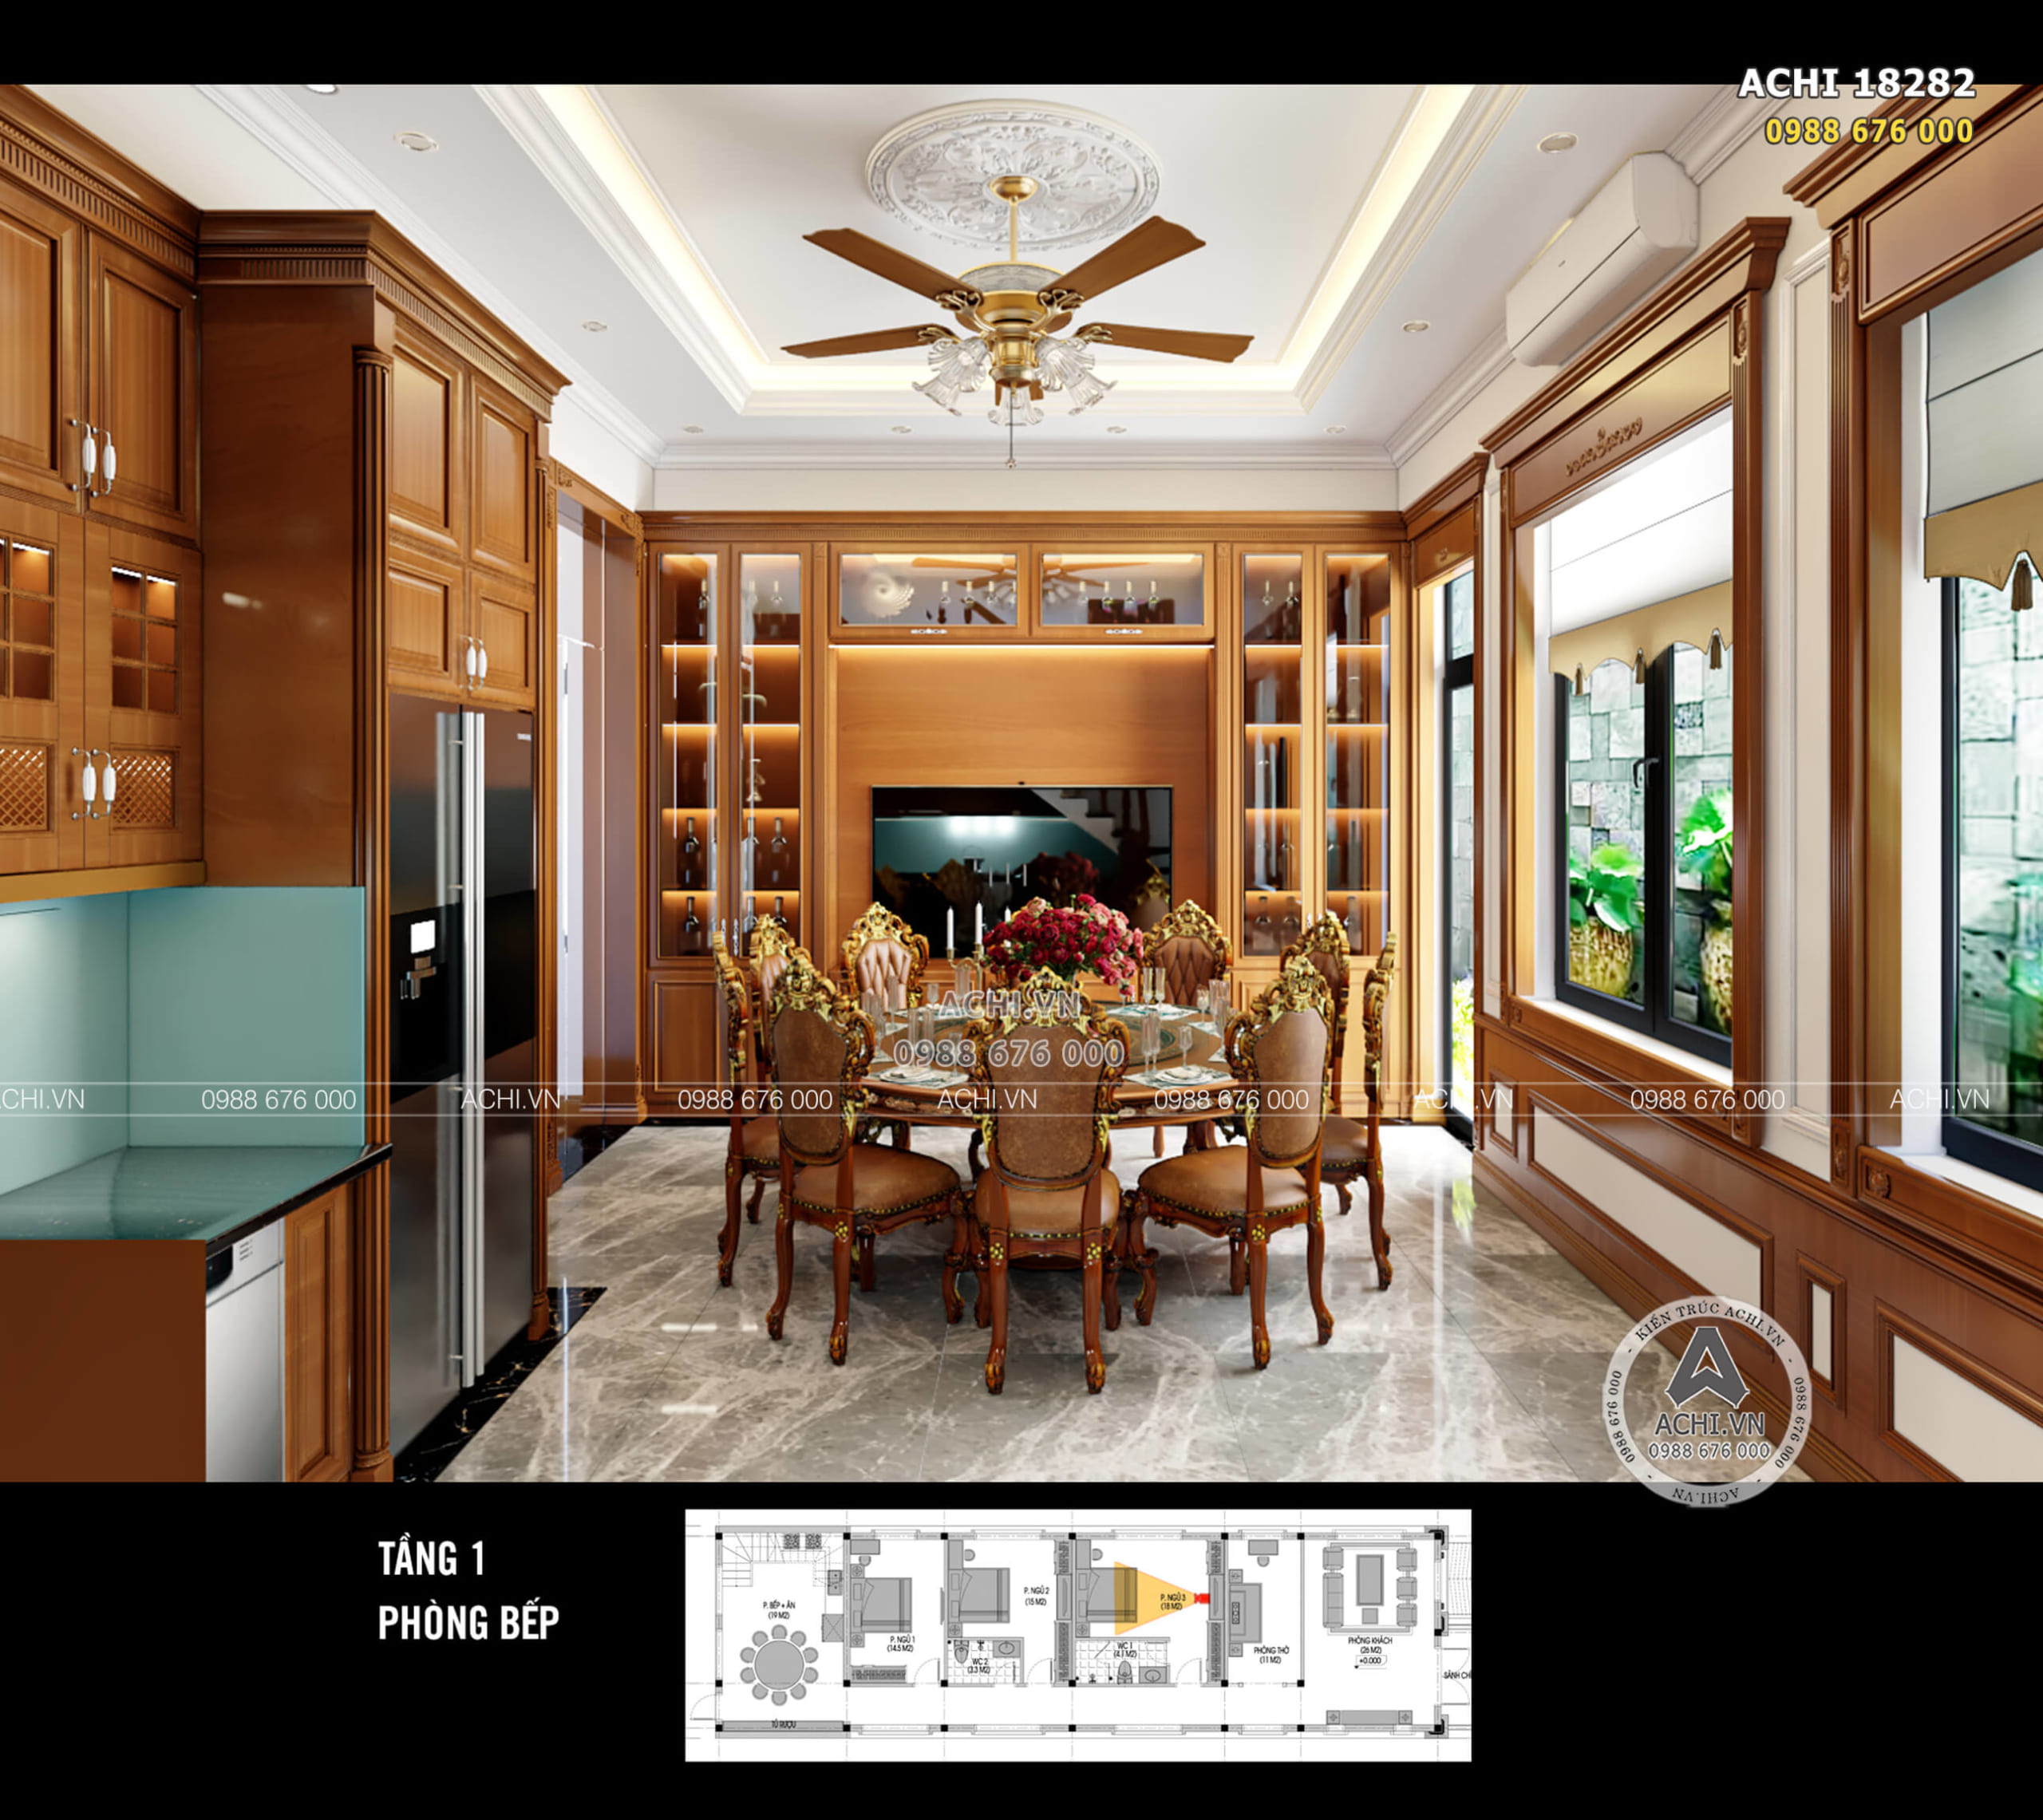 Mẫu thiết kế phòng bếp mẫu biệt thự 1 tầng theo phong cách tân cổ điển nhẹ nhàng